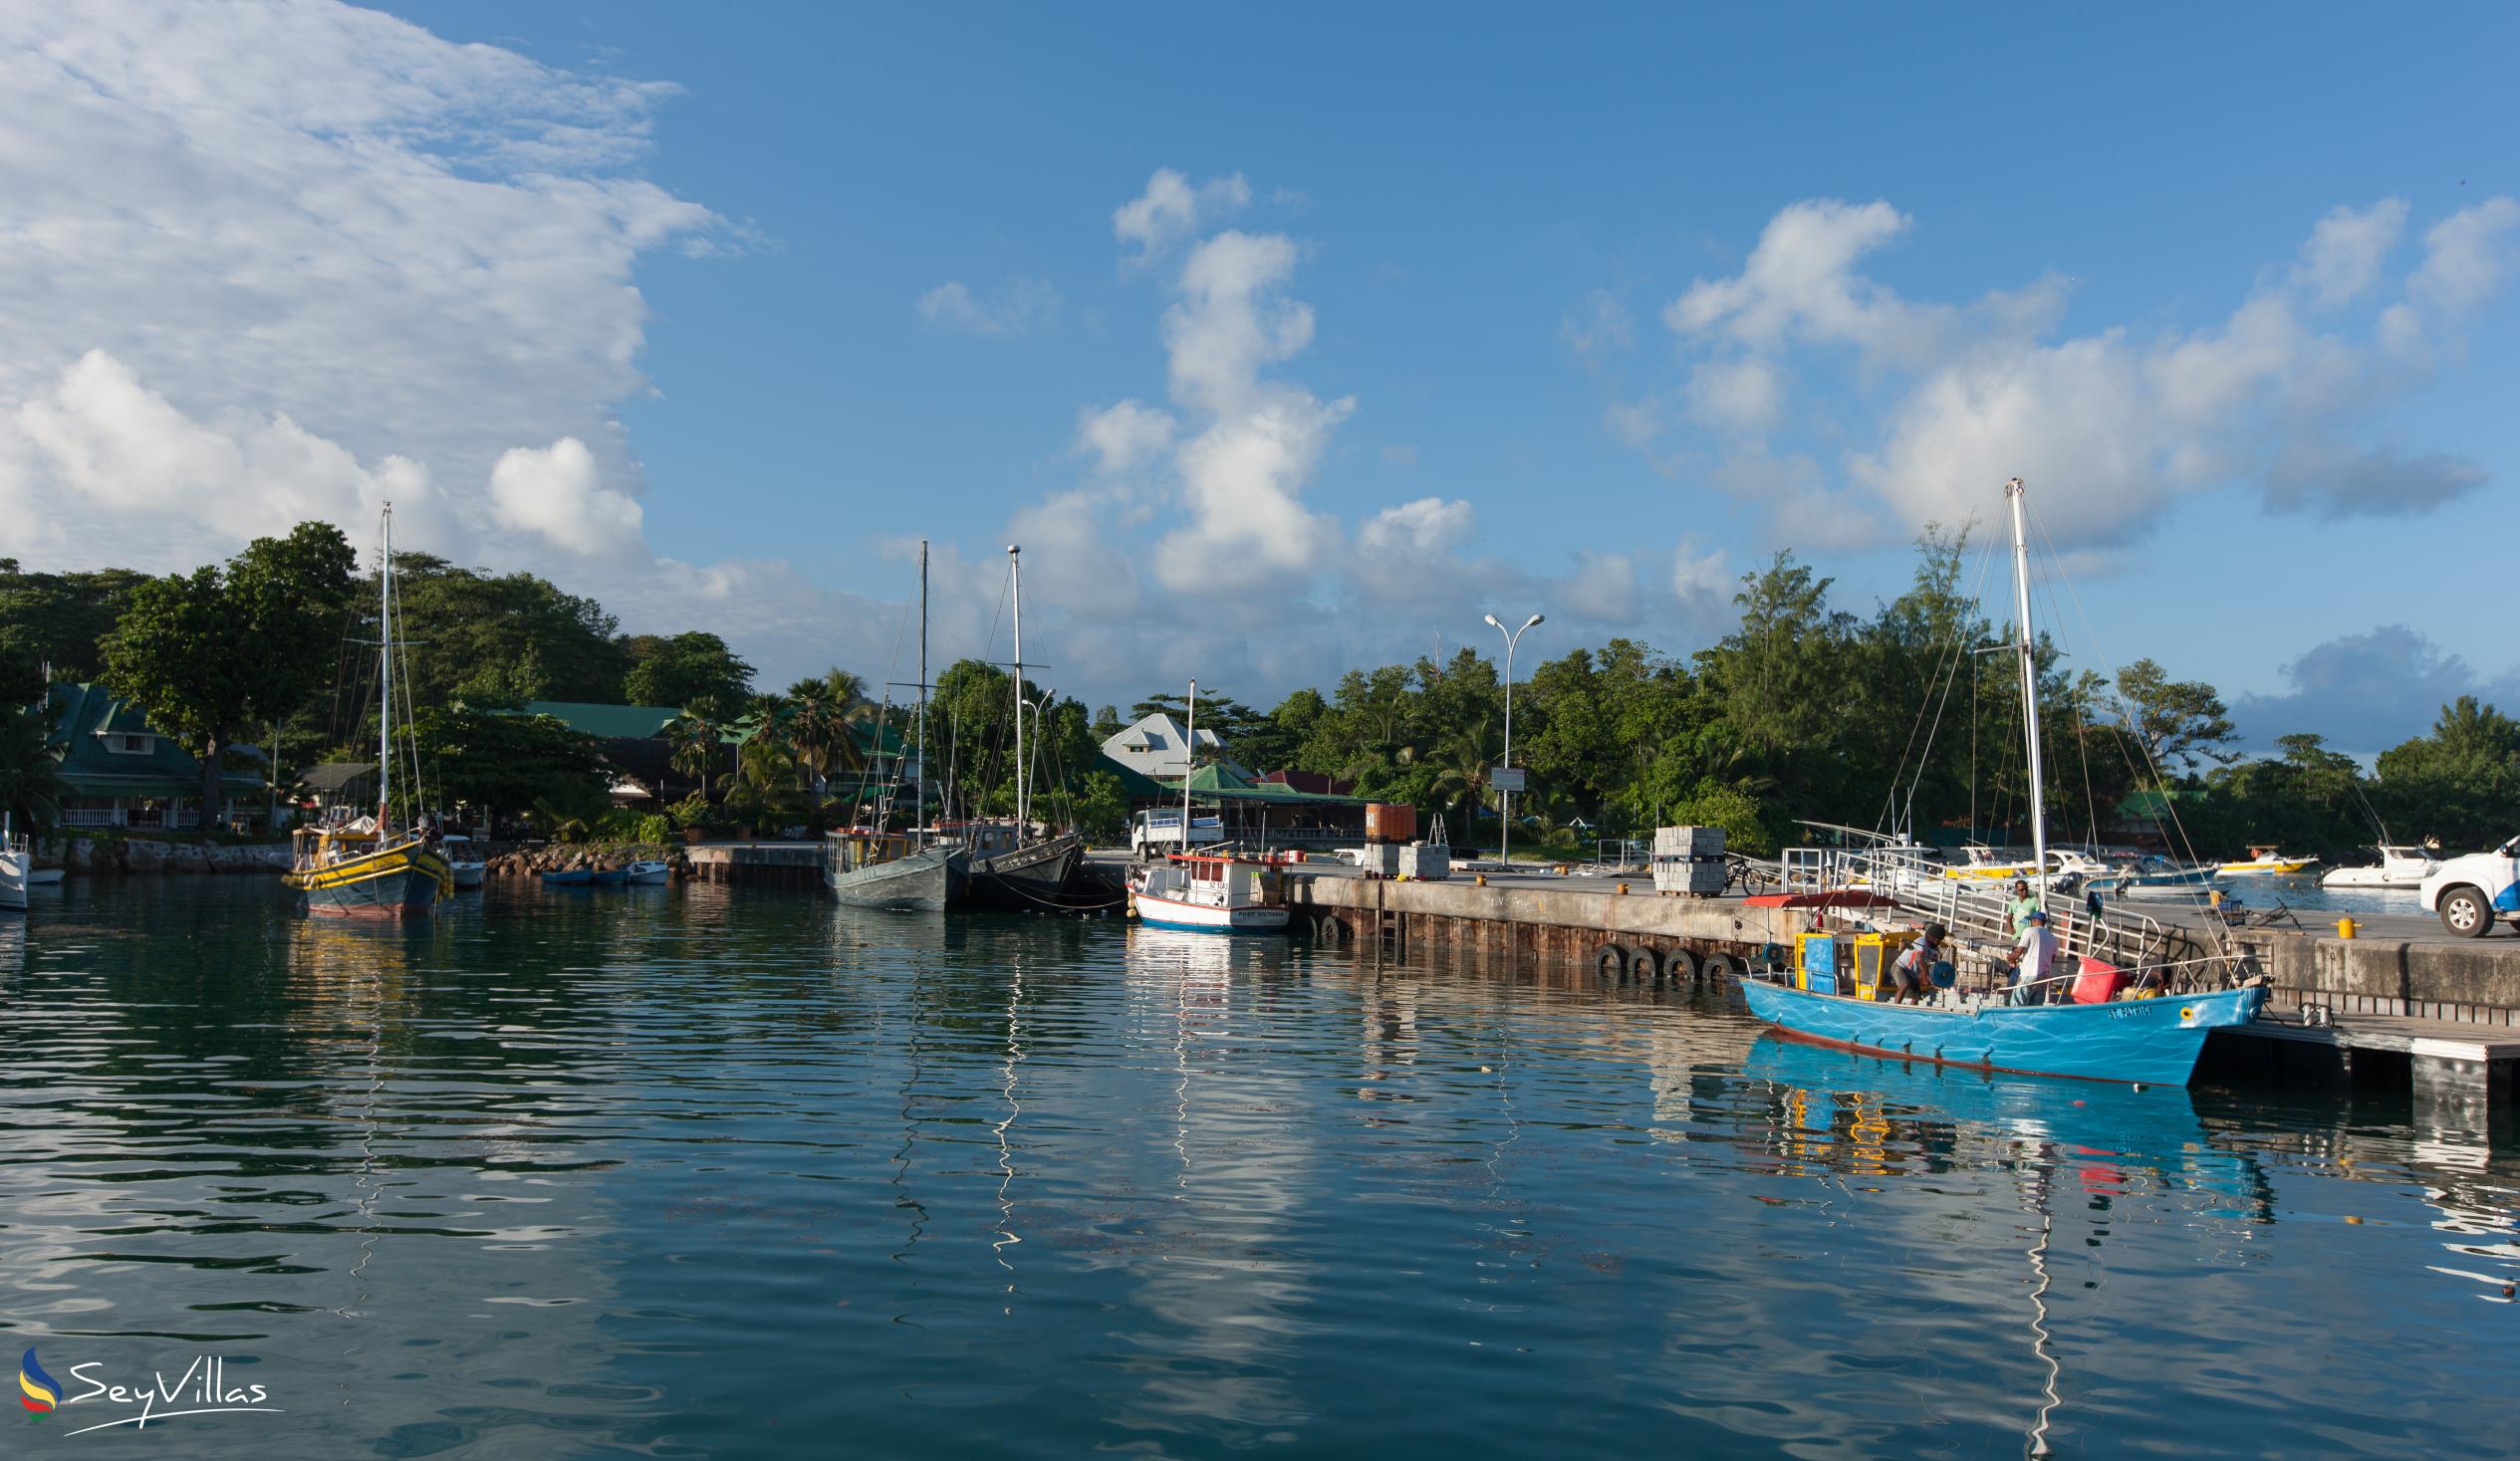 Foto 59: Tannette's Villa - Posizione - La Digue (Seychelles)